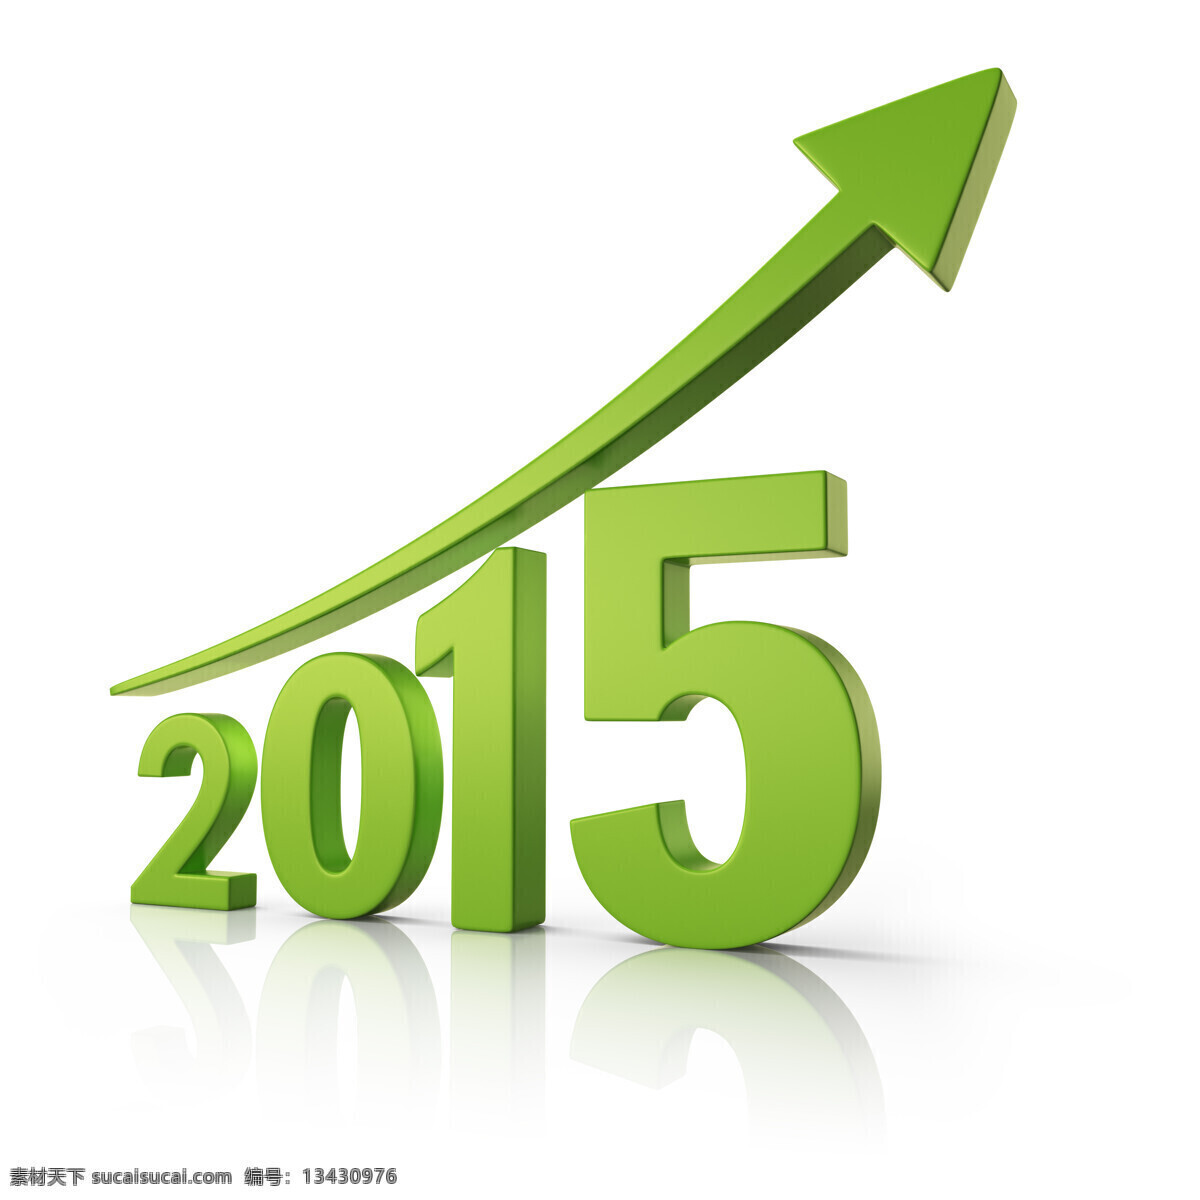 绿色 2015 箭头 新年 字体设计 绿色数字 立体数字 节日庆典 生活百科